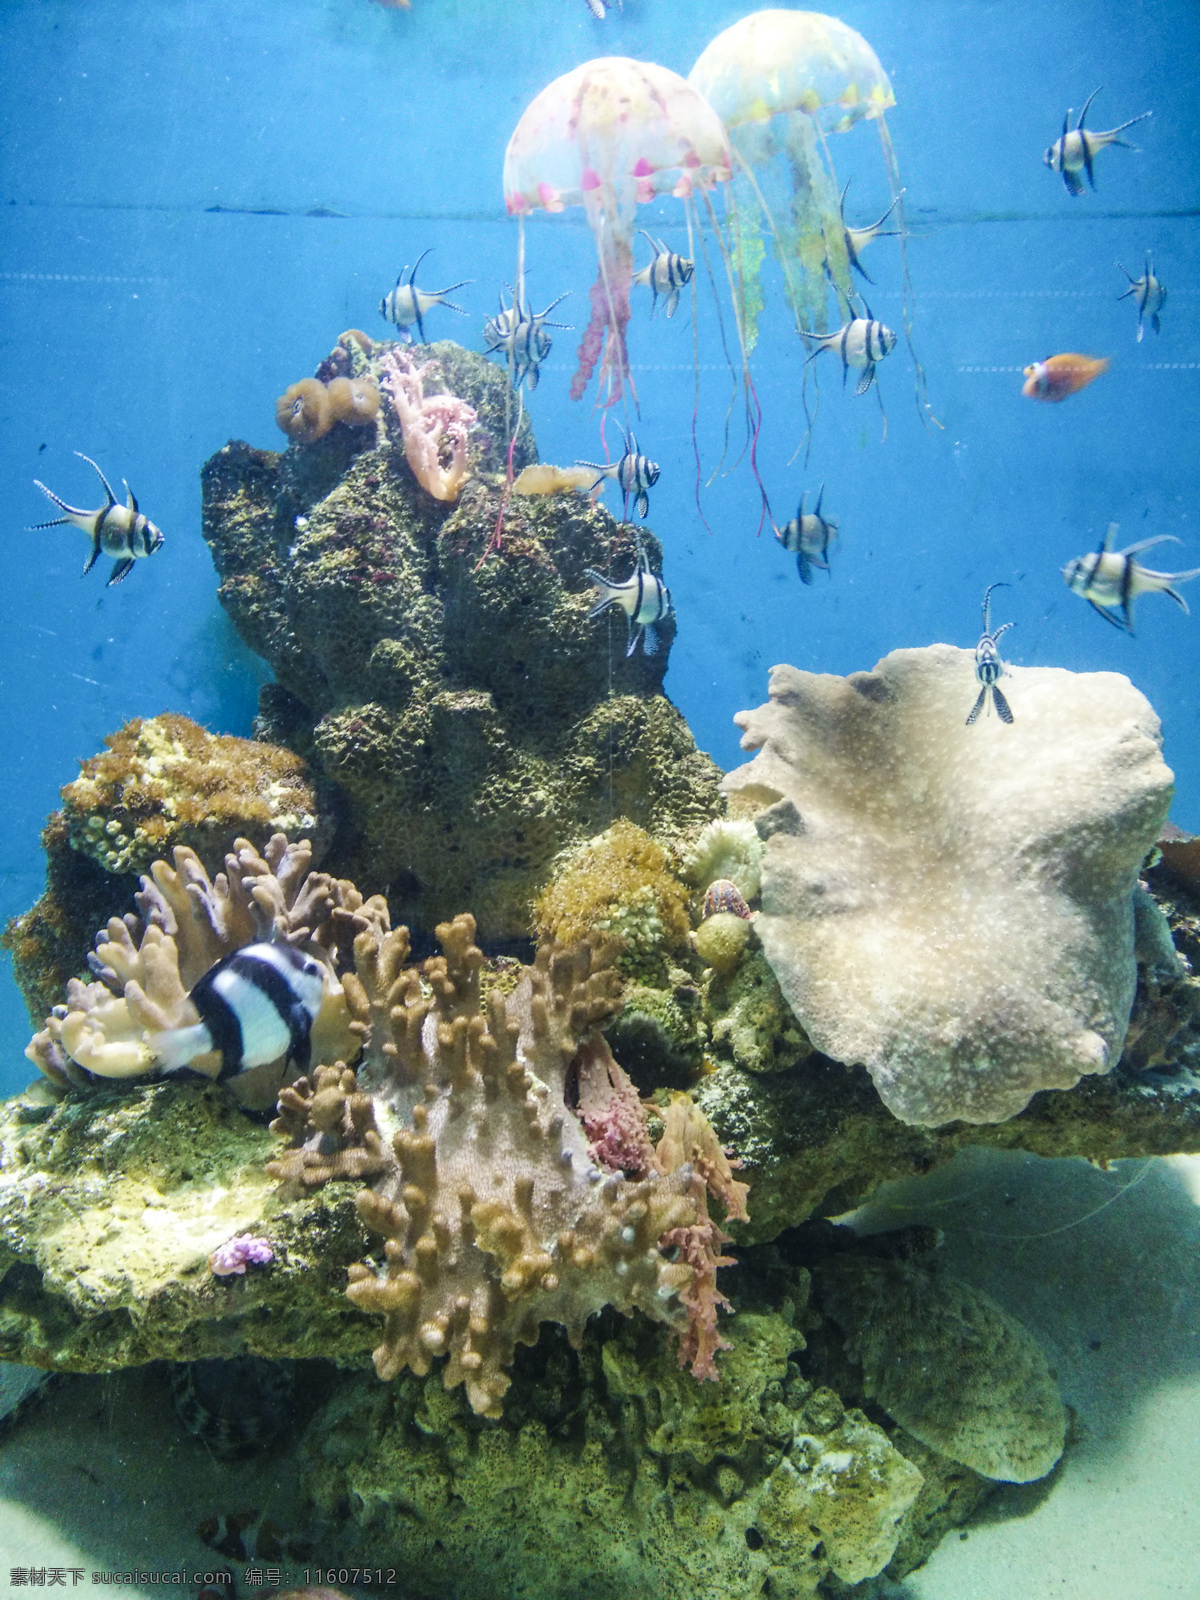 海洋生物 水族馆 海洋馆 鱼 生物 海底 水草 鱼群 海底世界 珊瑚 珊瑚礁 水母 生物世界